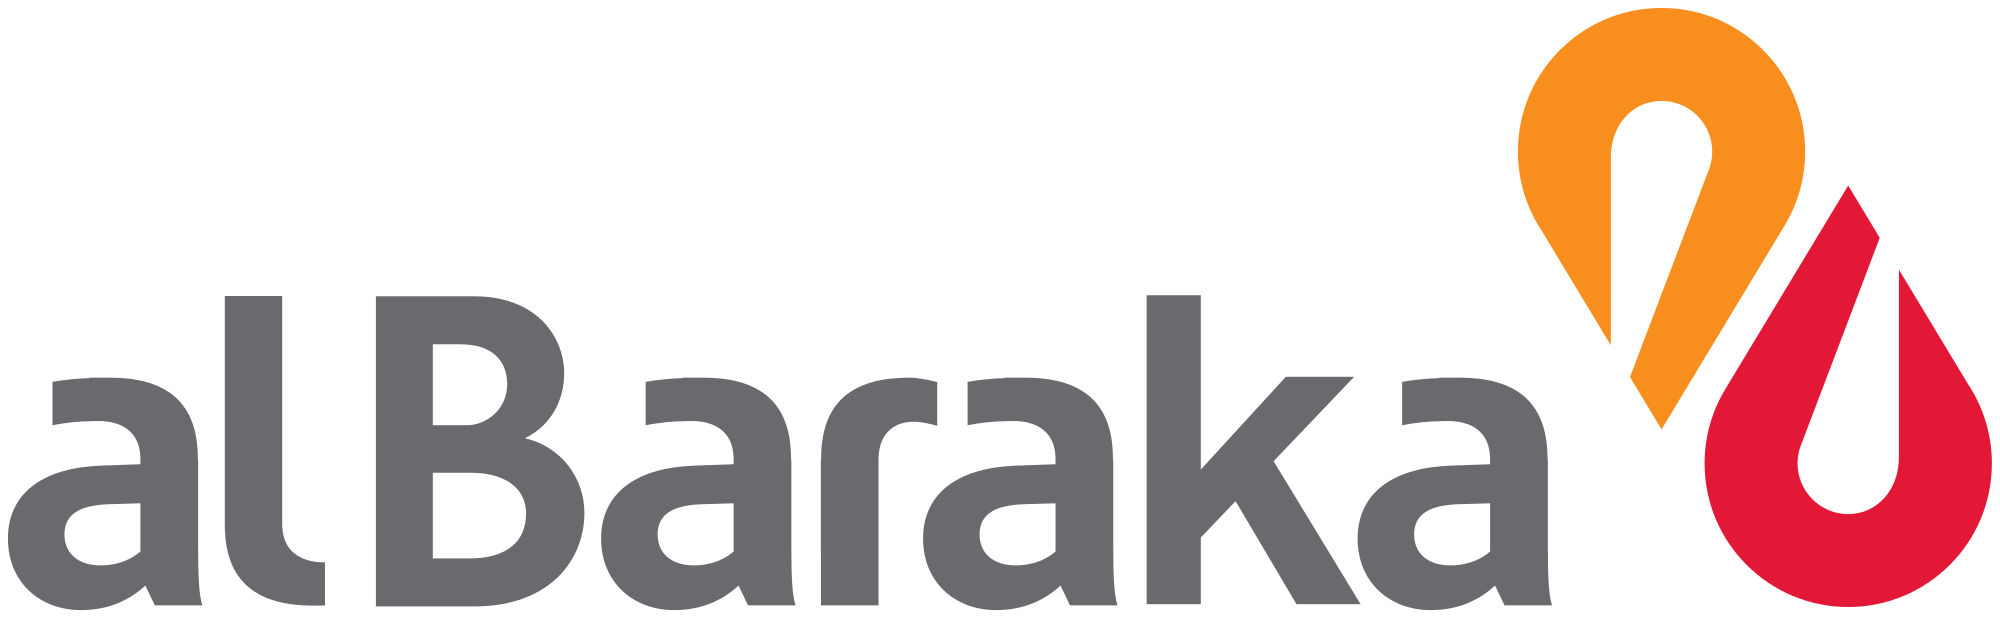 Banking Group Logo - File:Al Baraka Banking Group Logo.svg - Wikimedia Commons